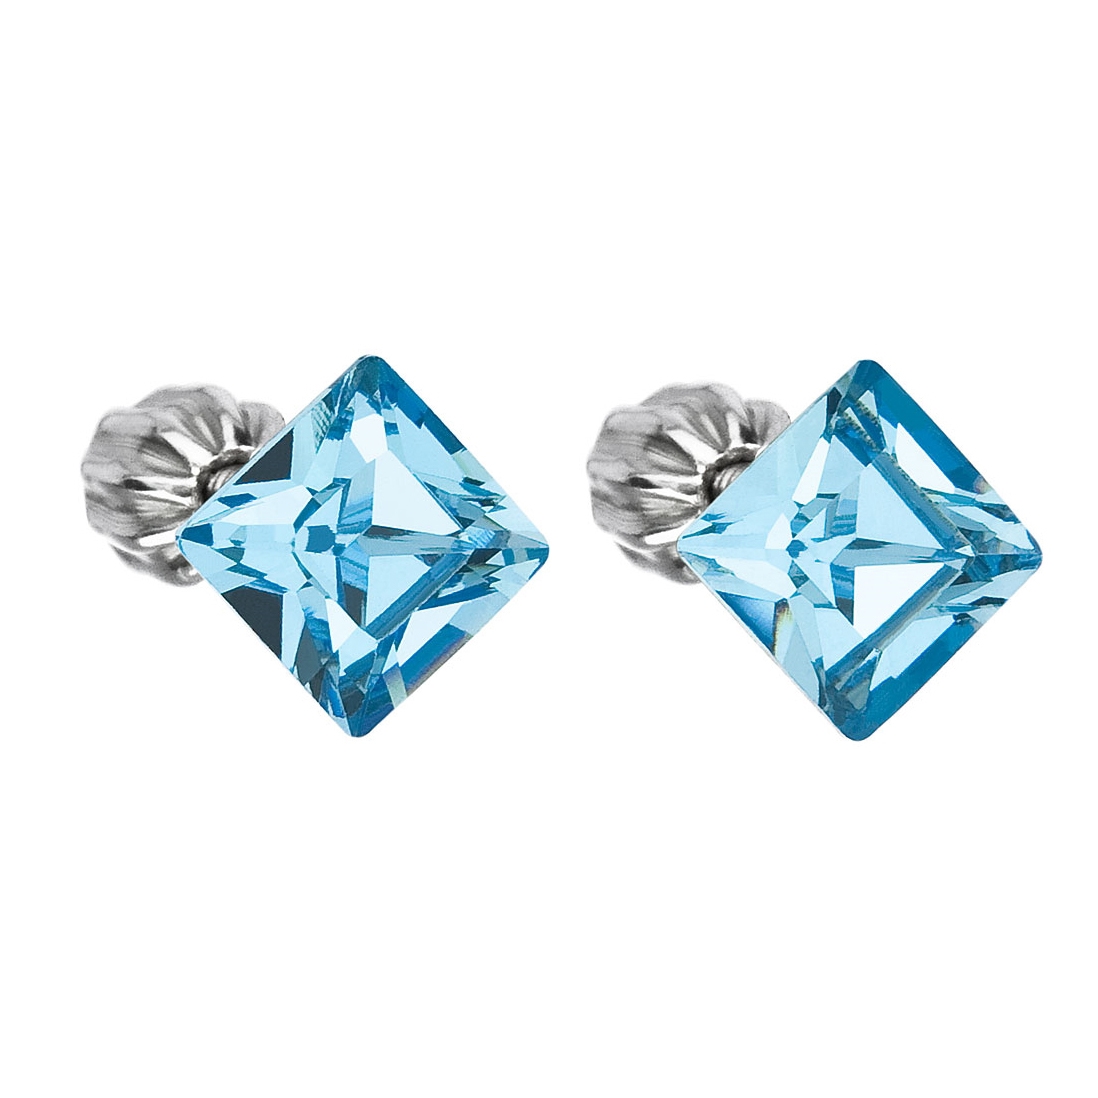 Strieborné náušnice s kryštálmi Crystals from Swarovski ®, Aqua